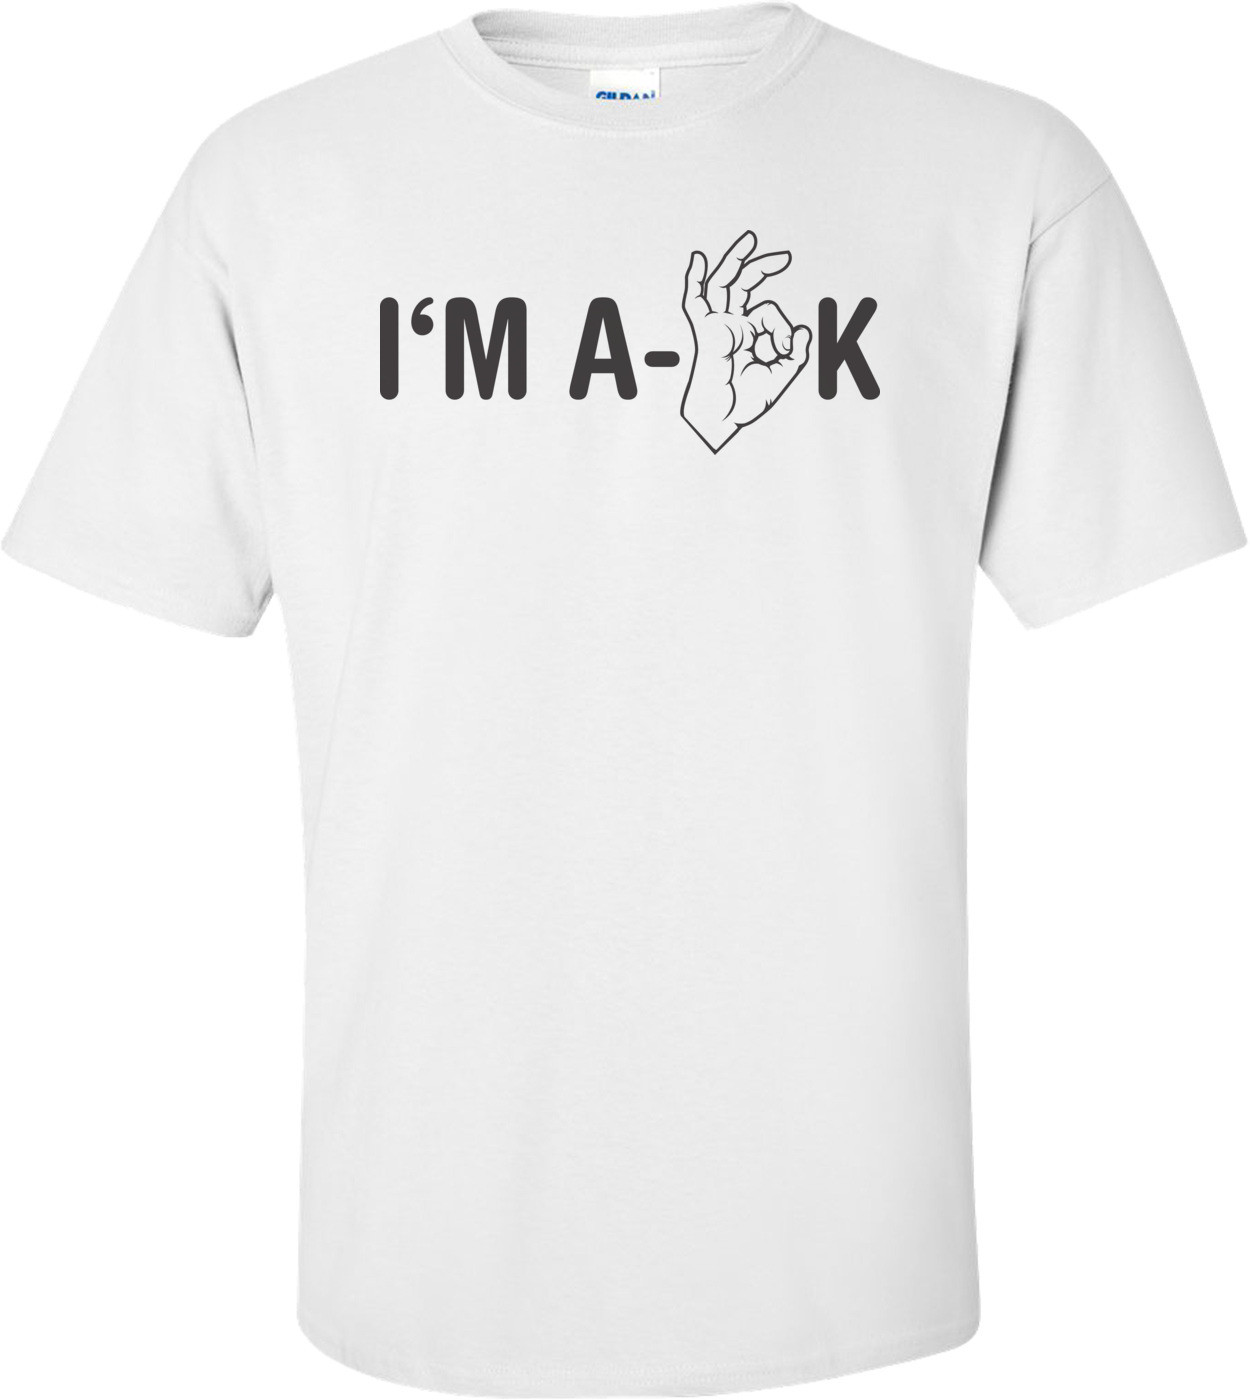 I'm A-ok T-shirt 